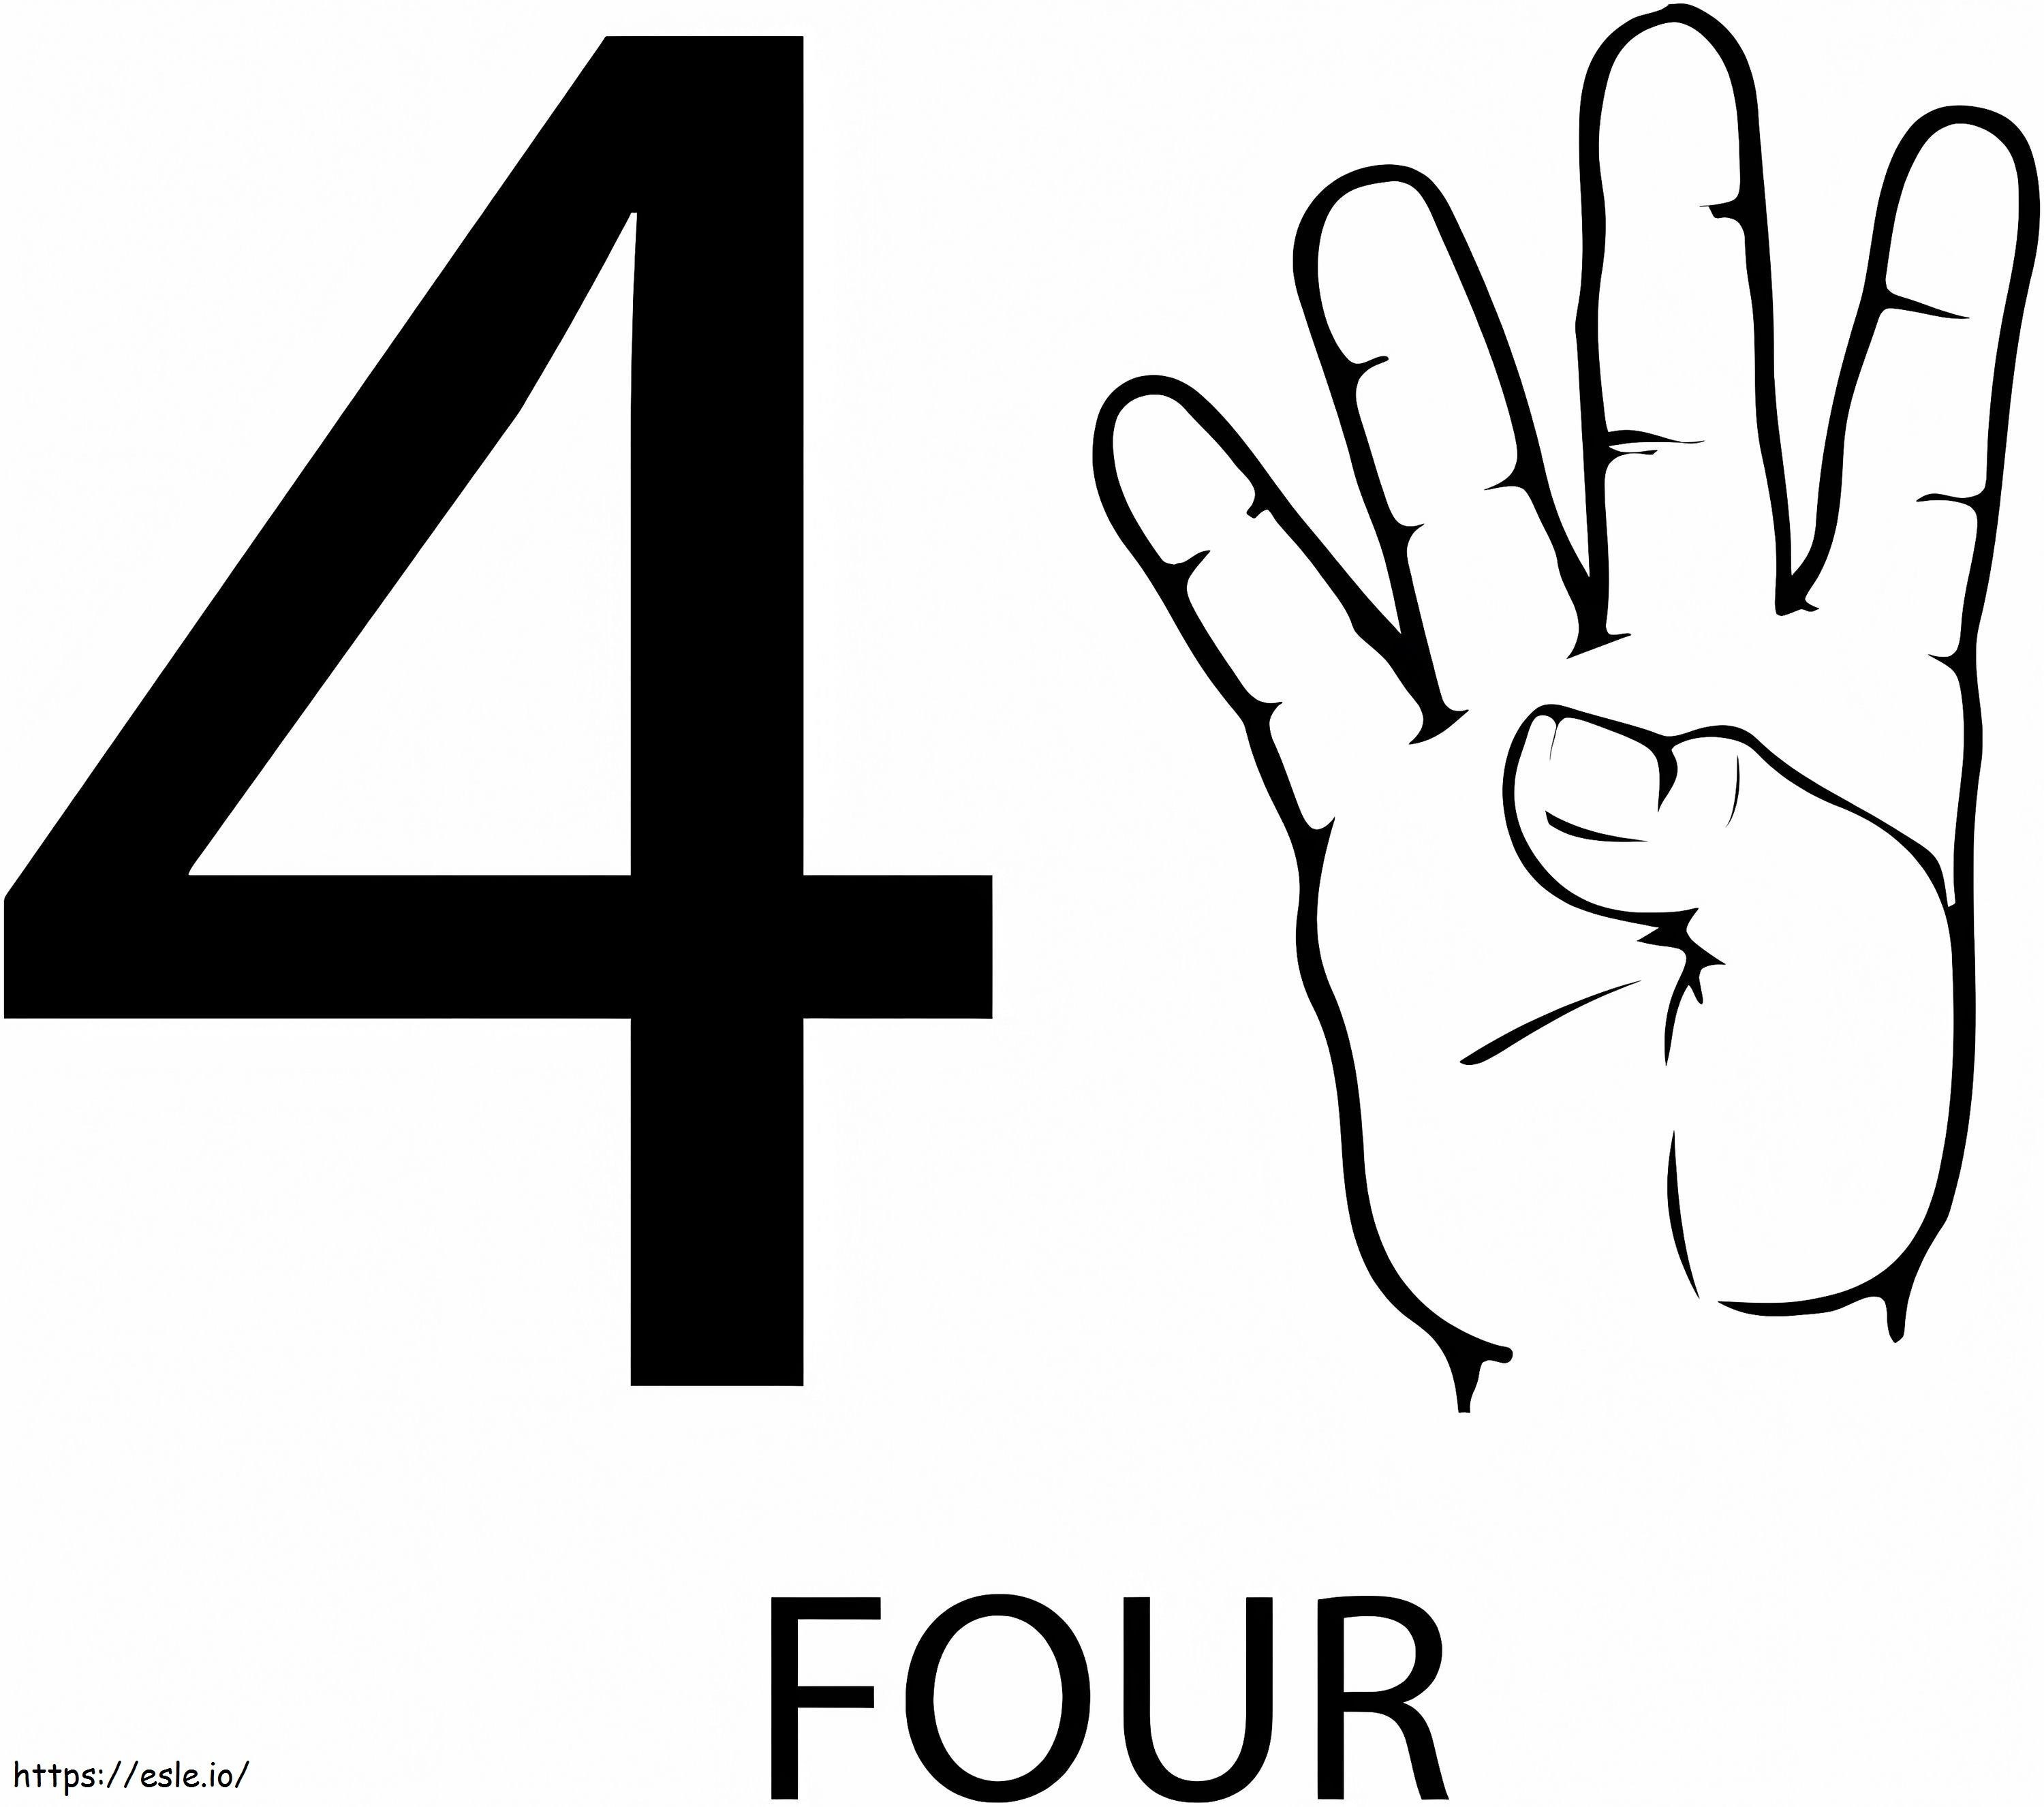 4-es számú jel kifestő